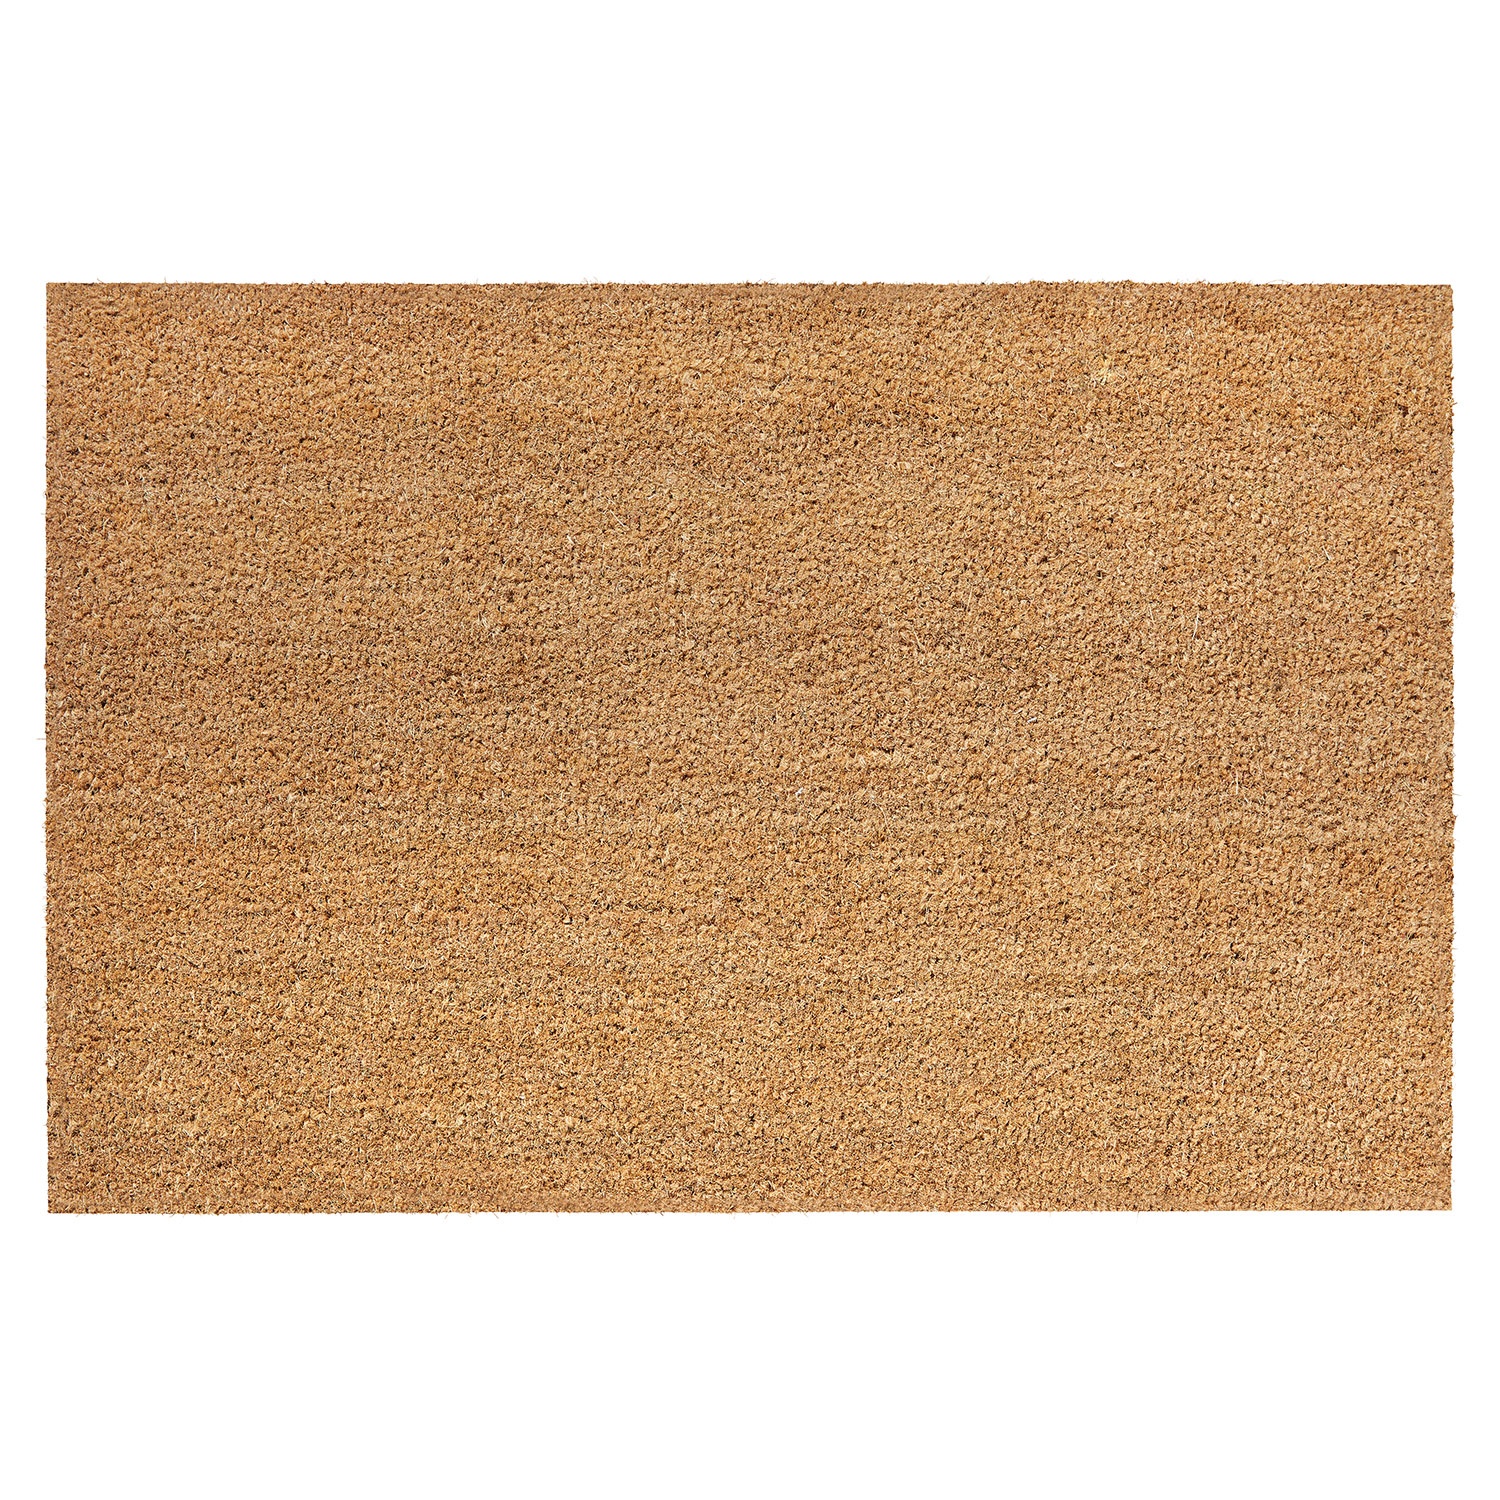 TUKAN Kokosfaser-Fußmatte, 60 x 90 cm